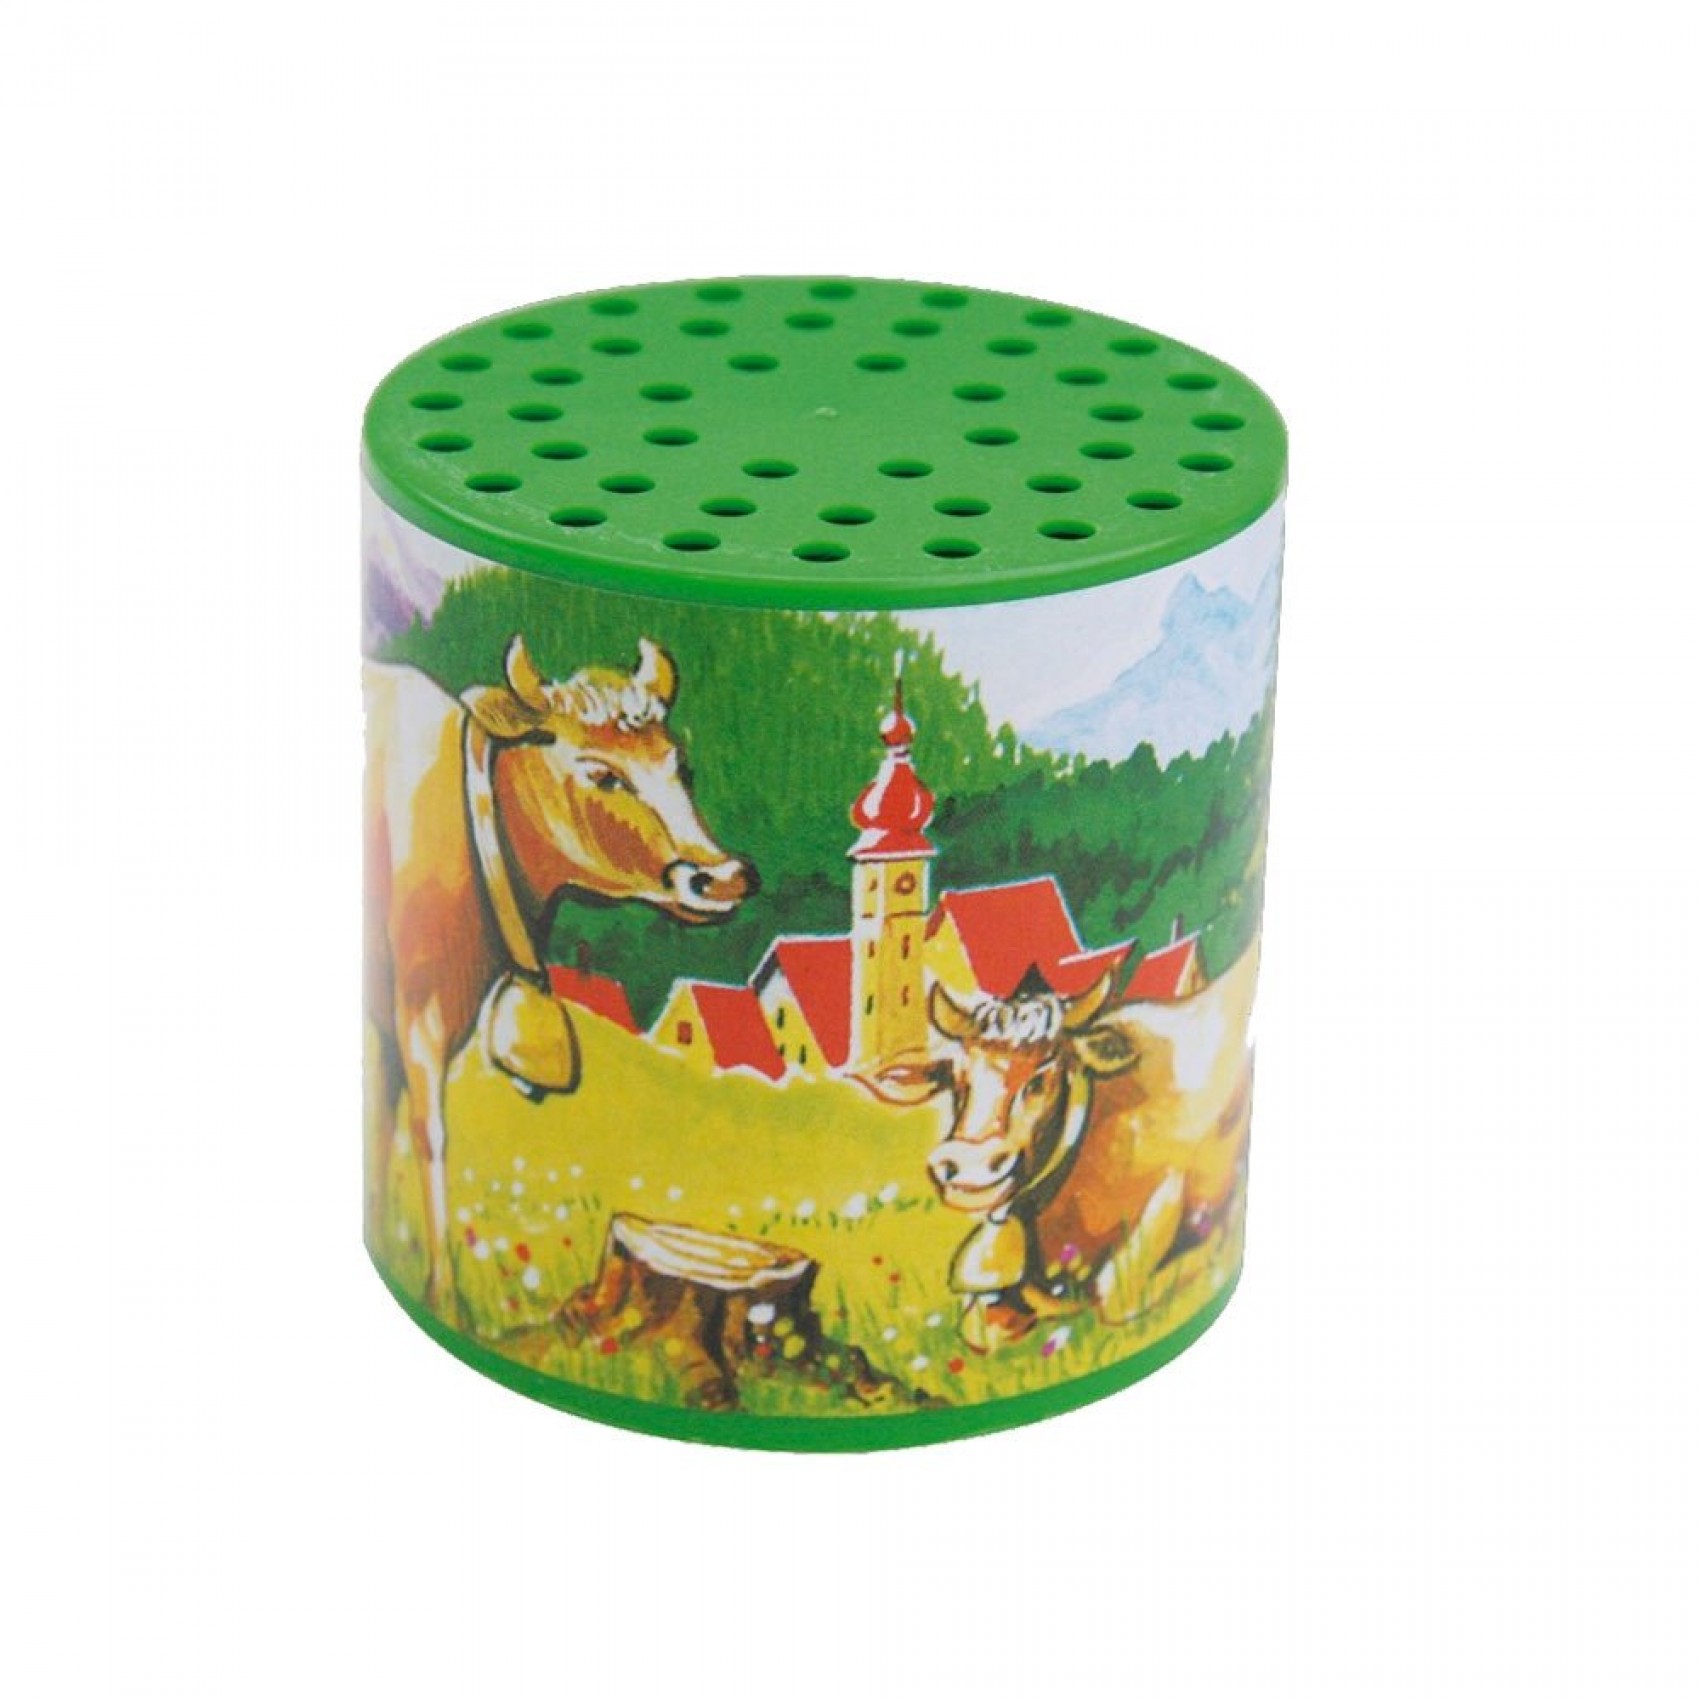 Boîte à meuh ou boîte à vache traditionnelle avec étiquette représentant  des ours polaires - Référence de cette boîte à meuh ou boîte à vache:  585014.